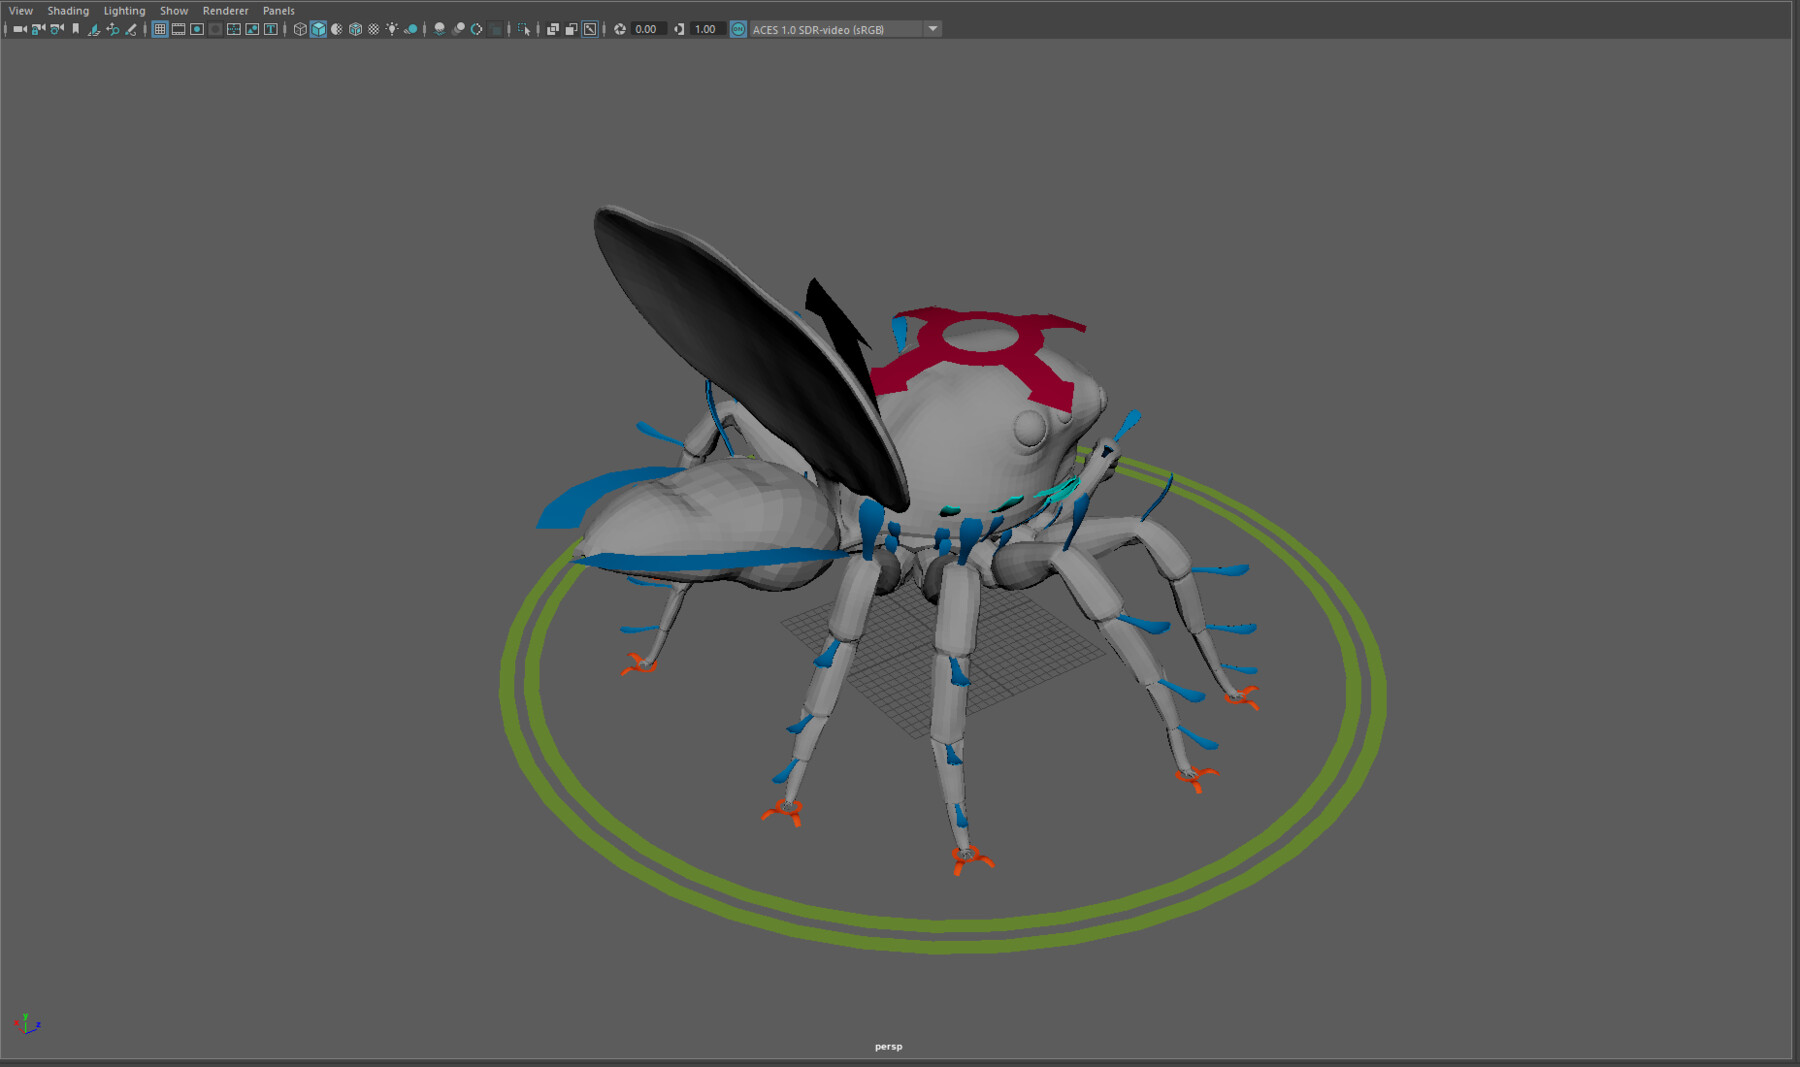 ArtStation - Peacock Spider Rigging Tutorial